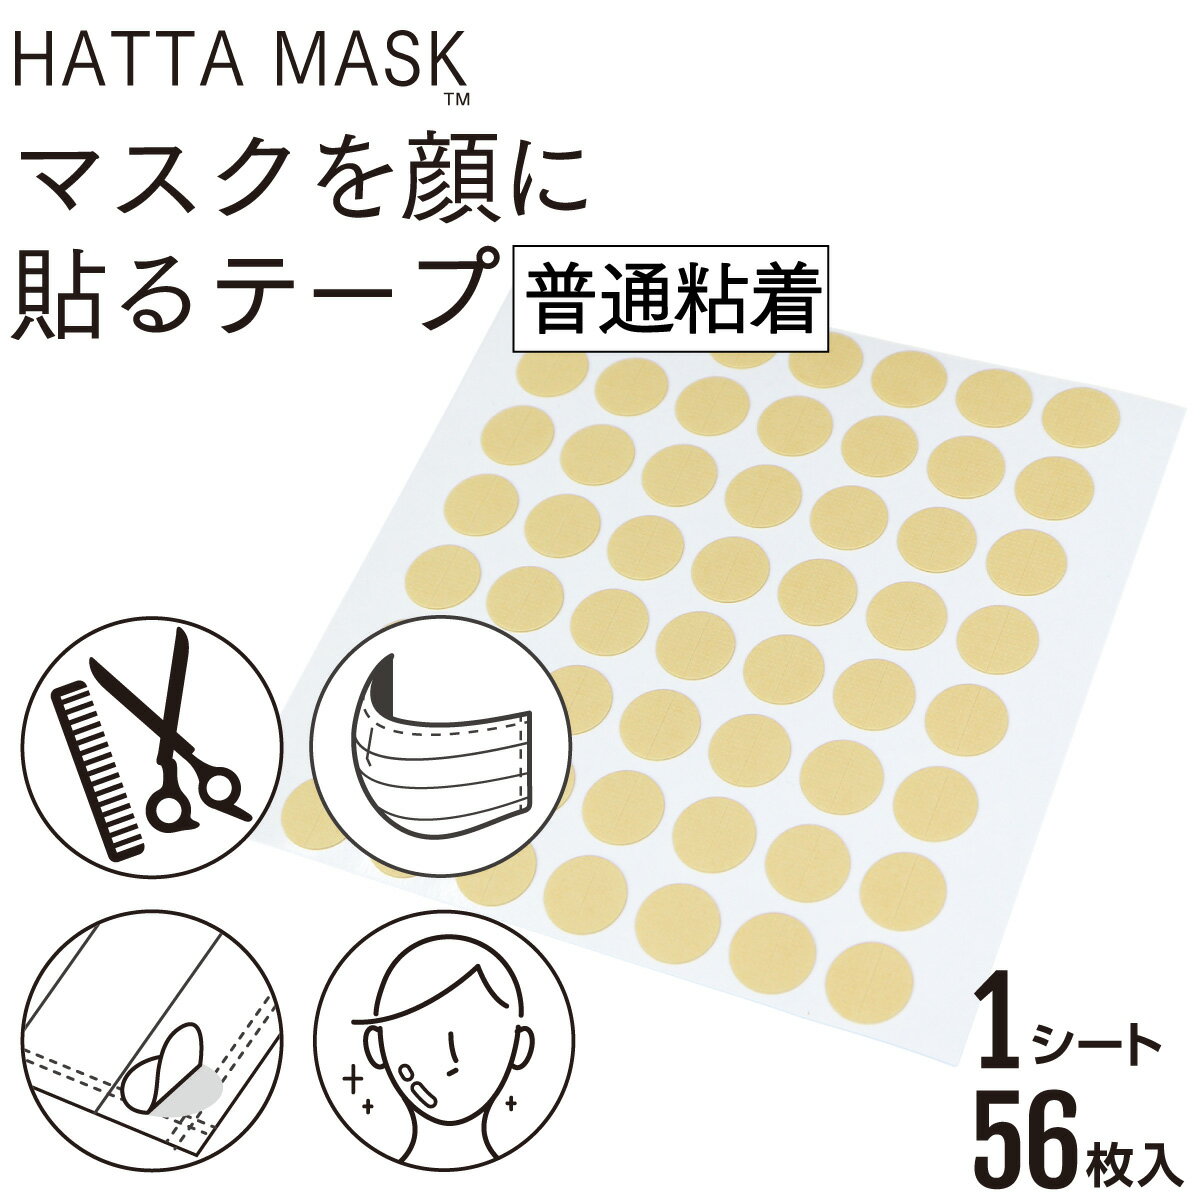 【レビューで100円クーポン】HATTA MASK マスクを顔に貼るテープ 普通粘着 日本製 肌に優しいテープ採用 貼るマスク 貼りなおしOK 1シート56枚入